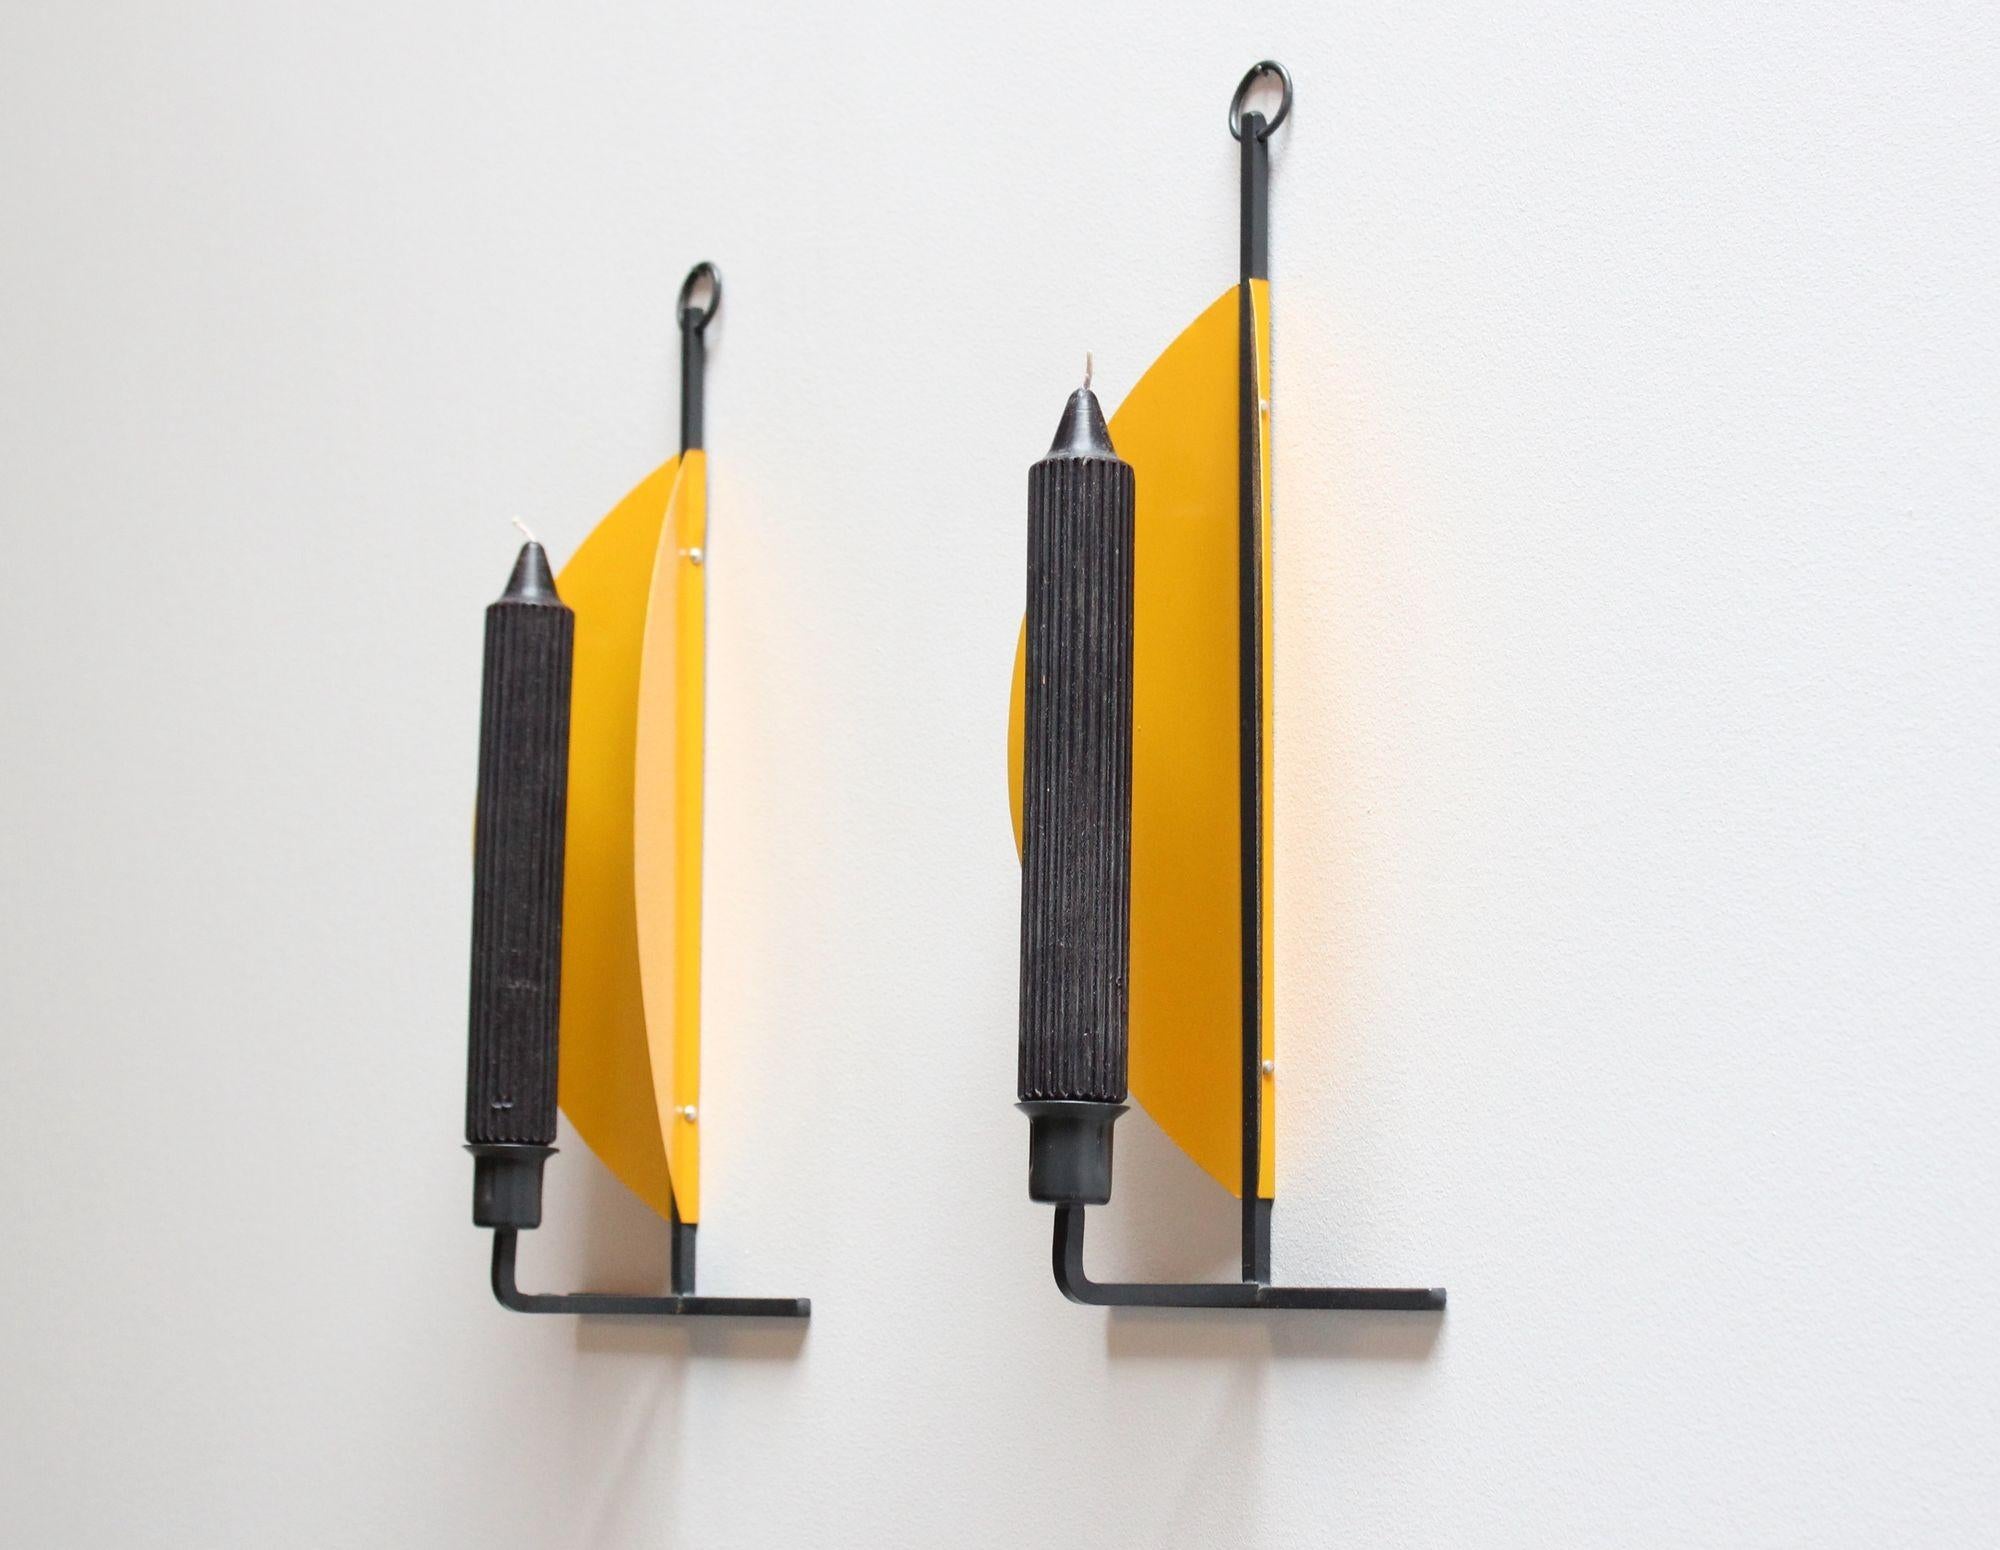 Stilvolles, modernistisches Kerzengebäck (ca. 1960er/1970er Jahre, Dänemark). Bestehend aus leuchtend gelben, halbkreisförmigen Scheiben, die schräg an einem anthrazitfarbenen Metallstiel befestigt sind, so dass der Eindruck entsteht, die Kerze zu